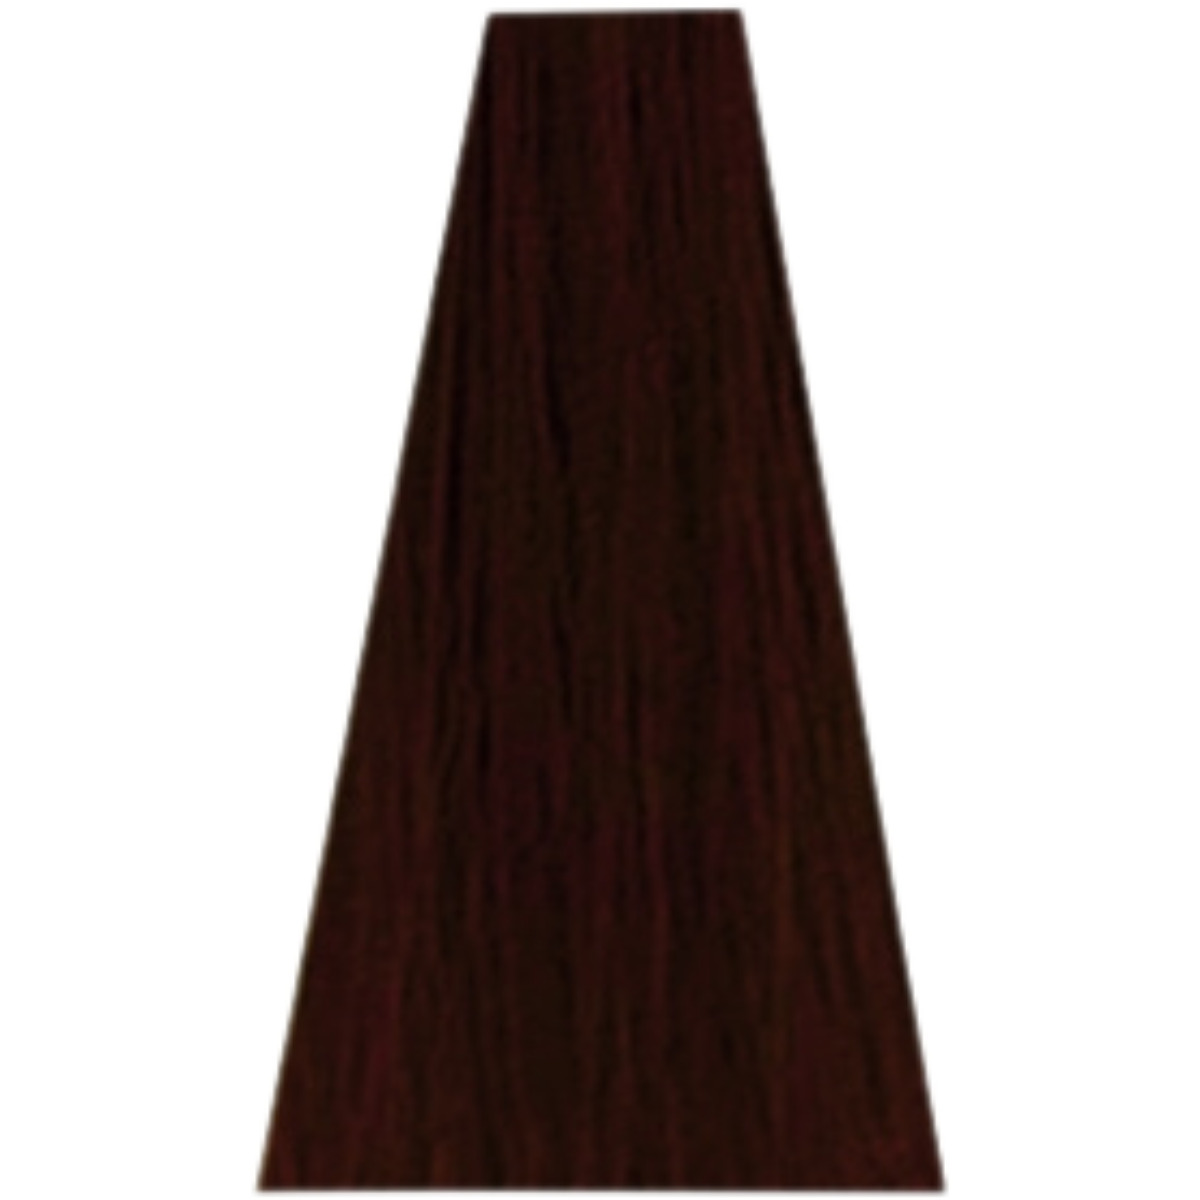 צבע שיער 4.20 RED / COPPER / BURGUNDY דיה רישס לוריאל DIA RICHESSE LOREAL צבע שטיפה לשיער